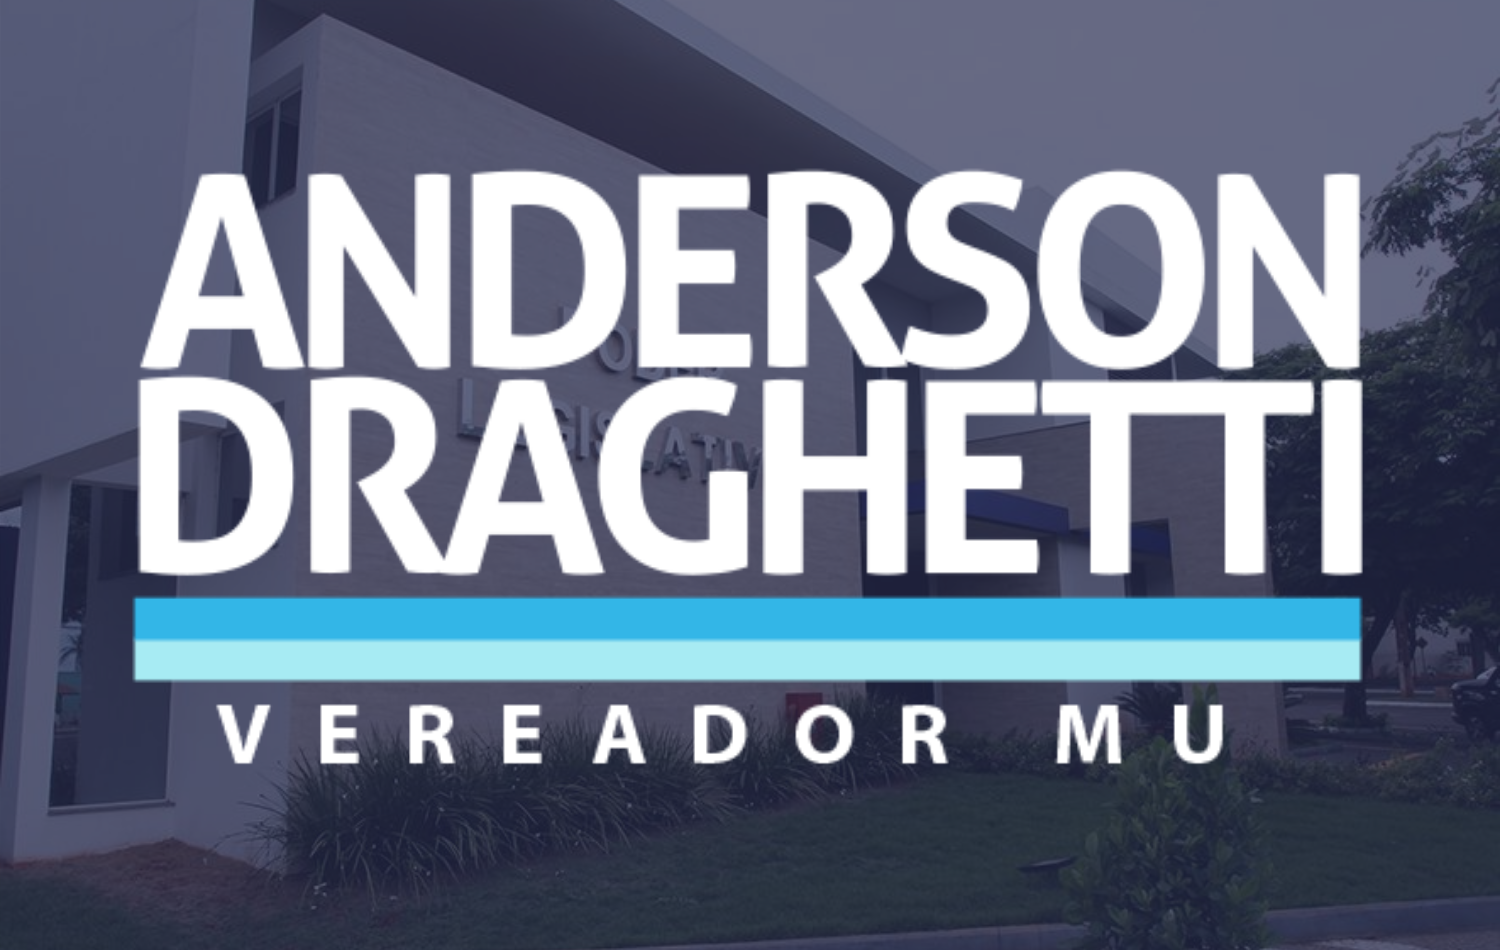 Conheça a trajetória do Vereador Anderson Draghetti neste primeiro semestre de 2021